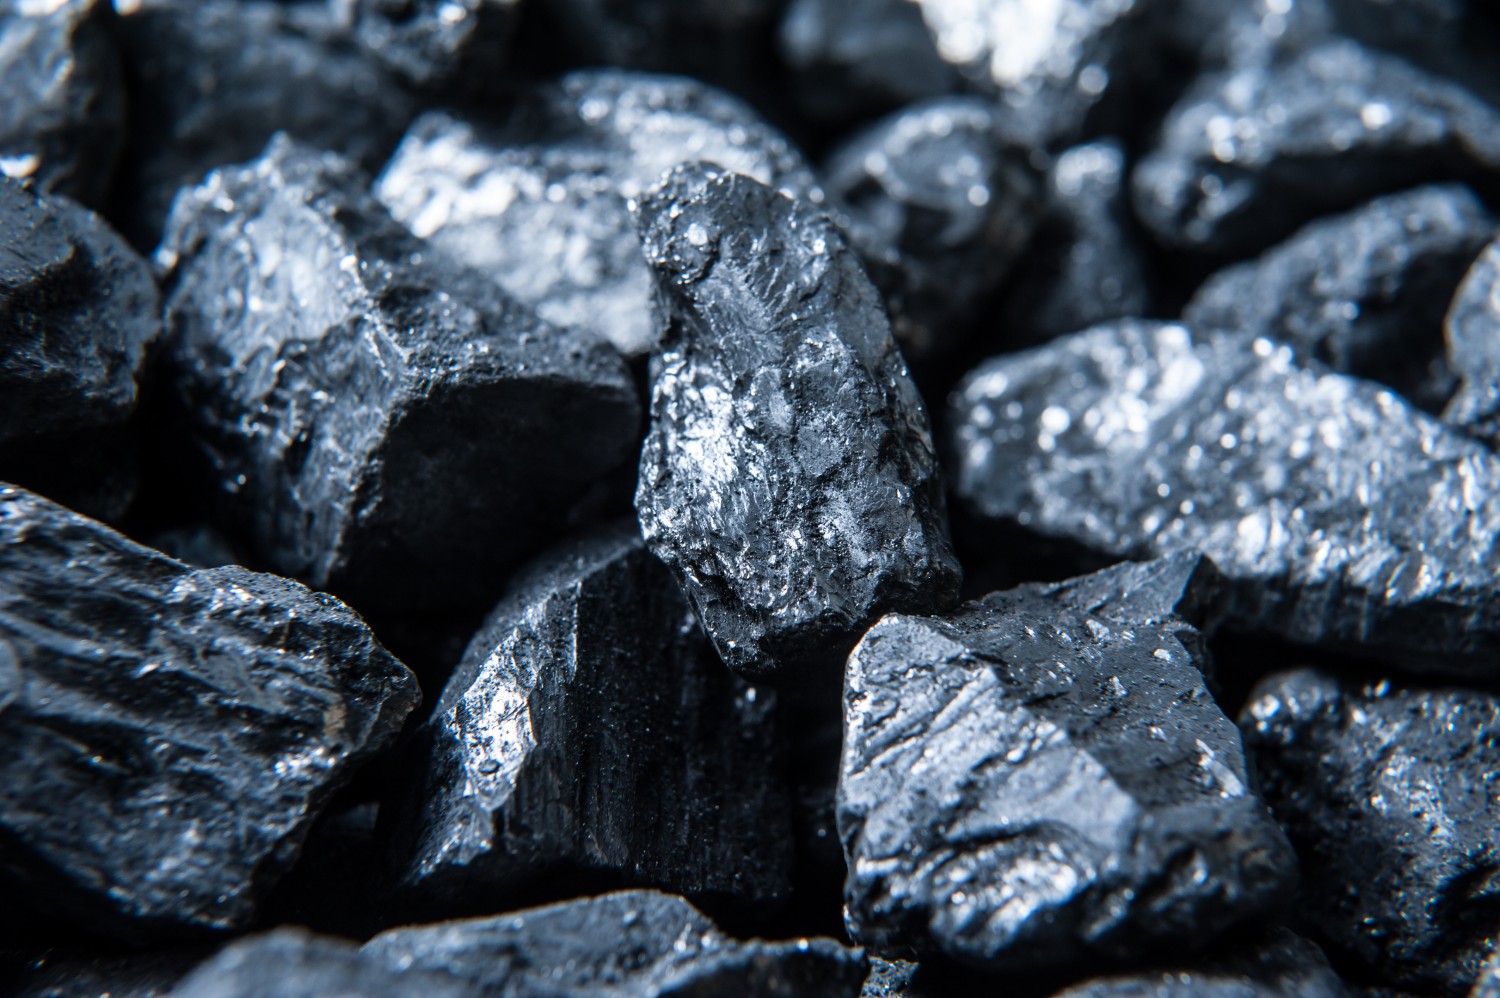 Уряд хоче витратити додатковий 1 млрд гривень на вугільні шахти до кінця року